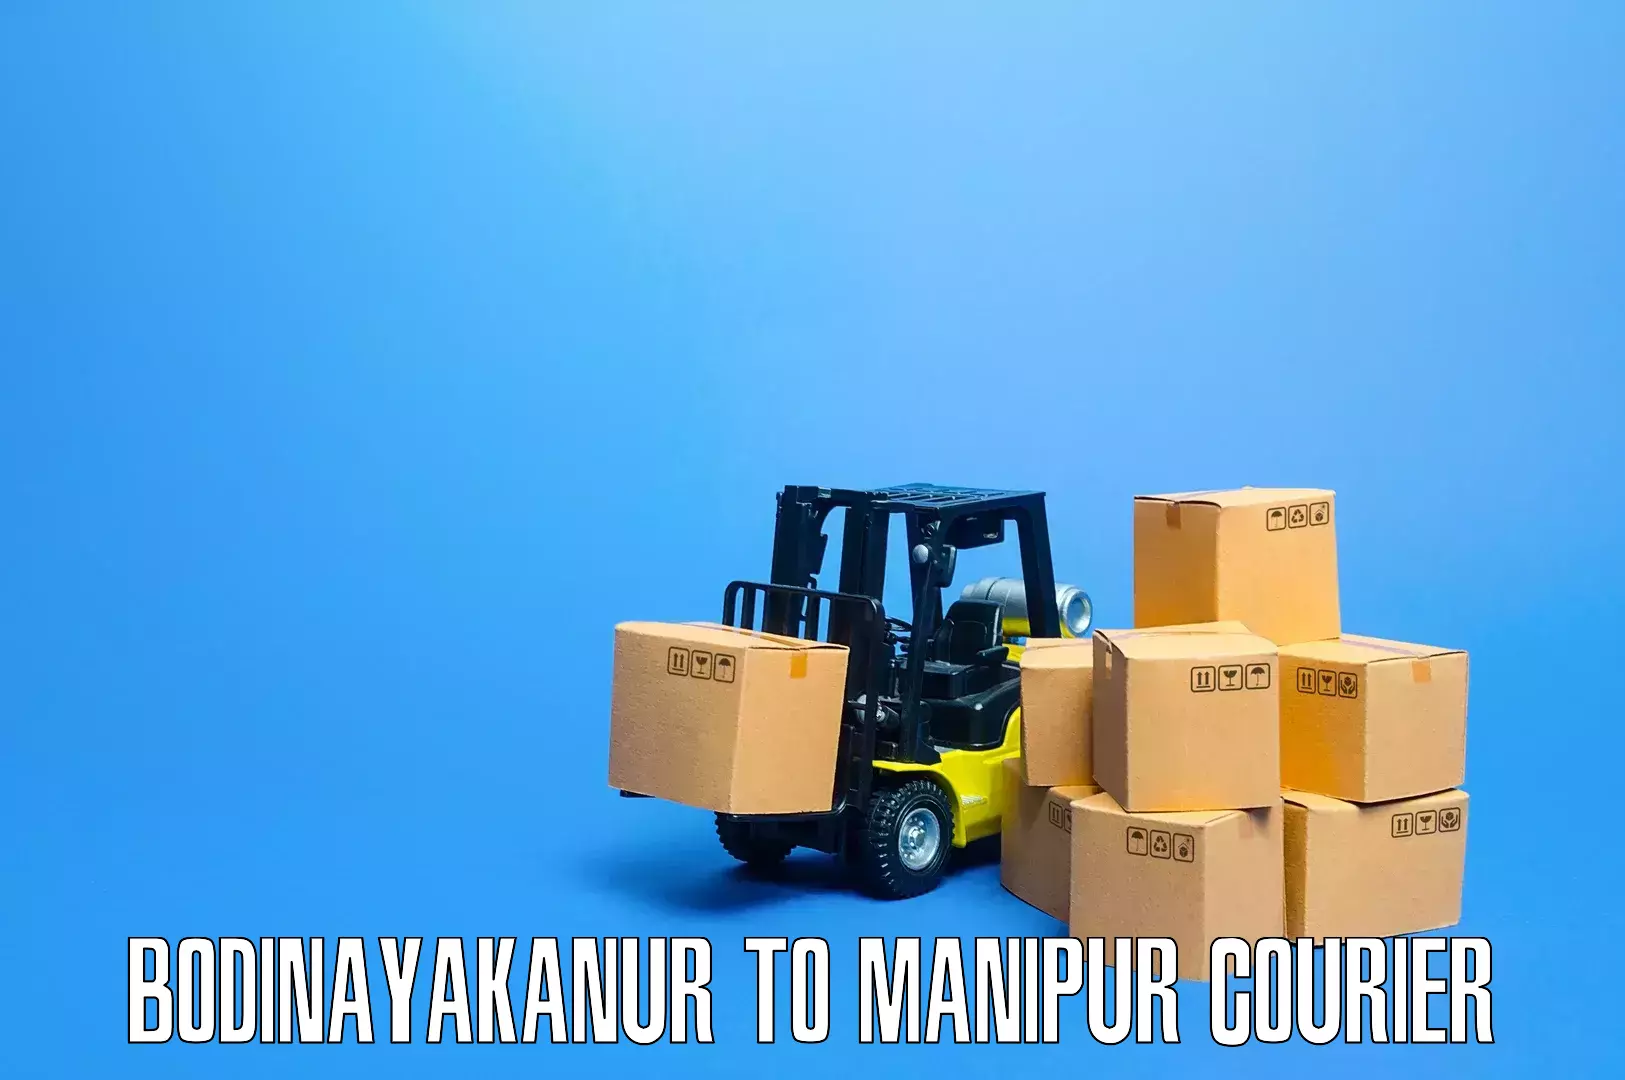 Nationwide furniture transport Bodinayakanur to Kanti